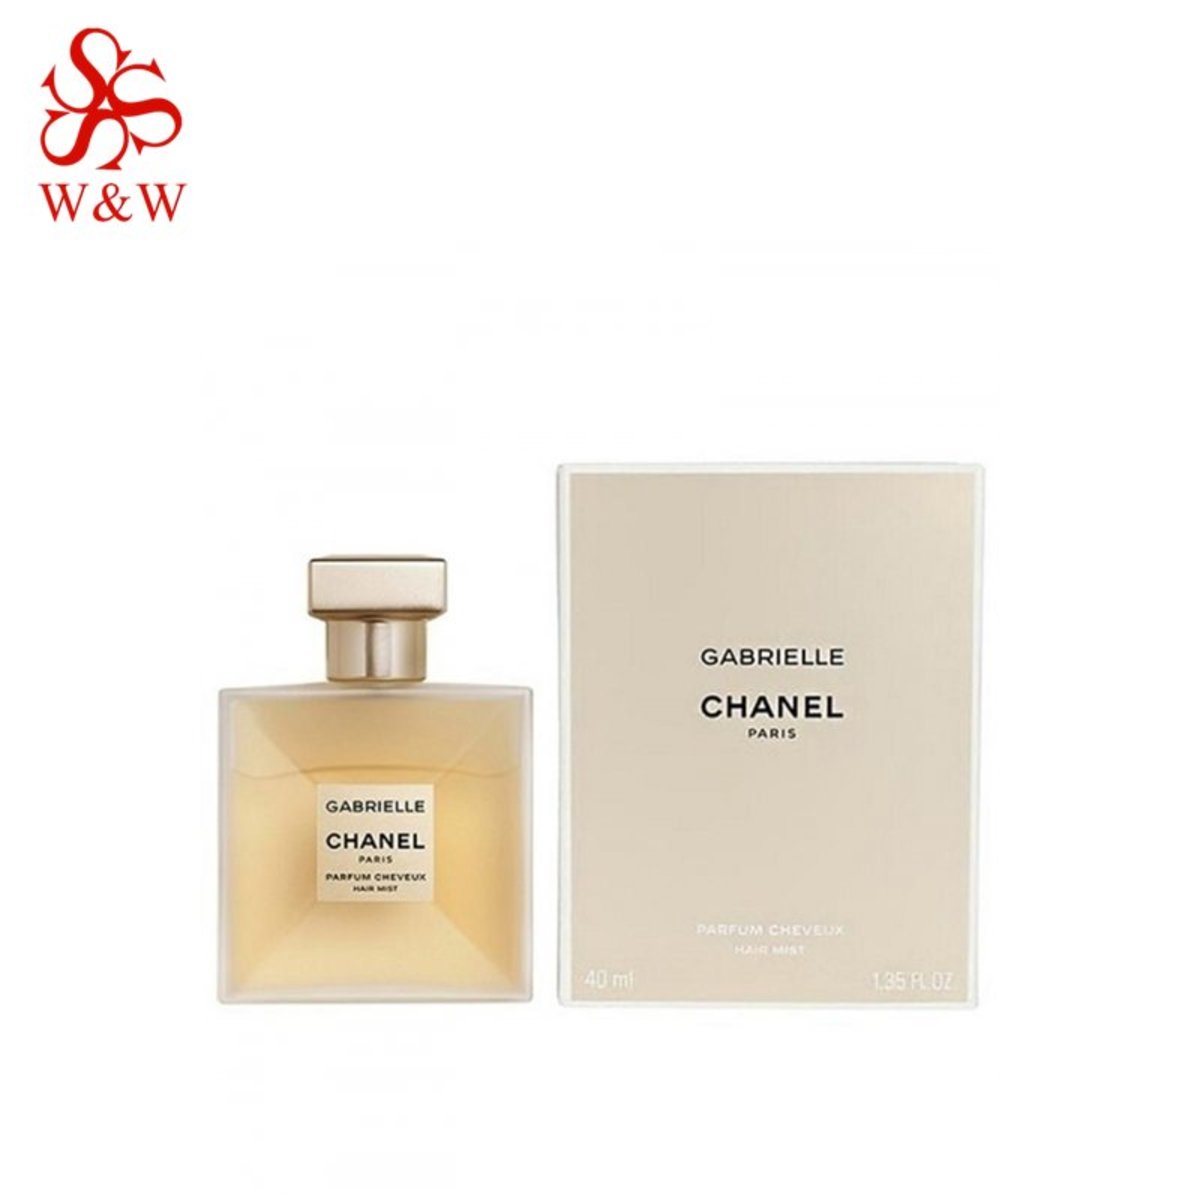  CHANEL Perfume Gabrielle Parfum Cheveux (40 ml